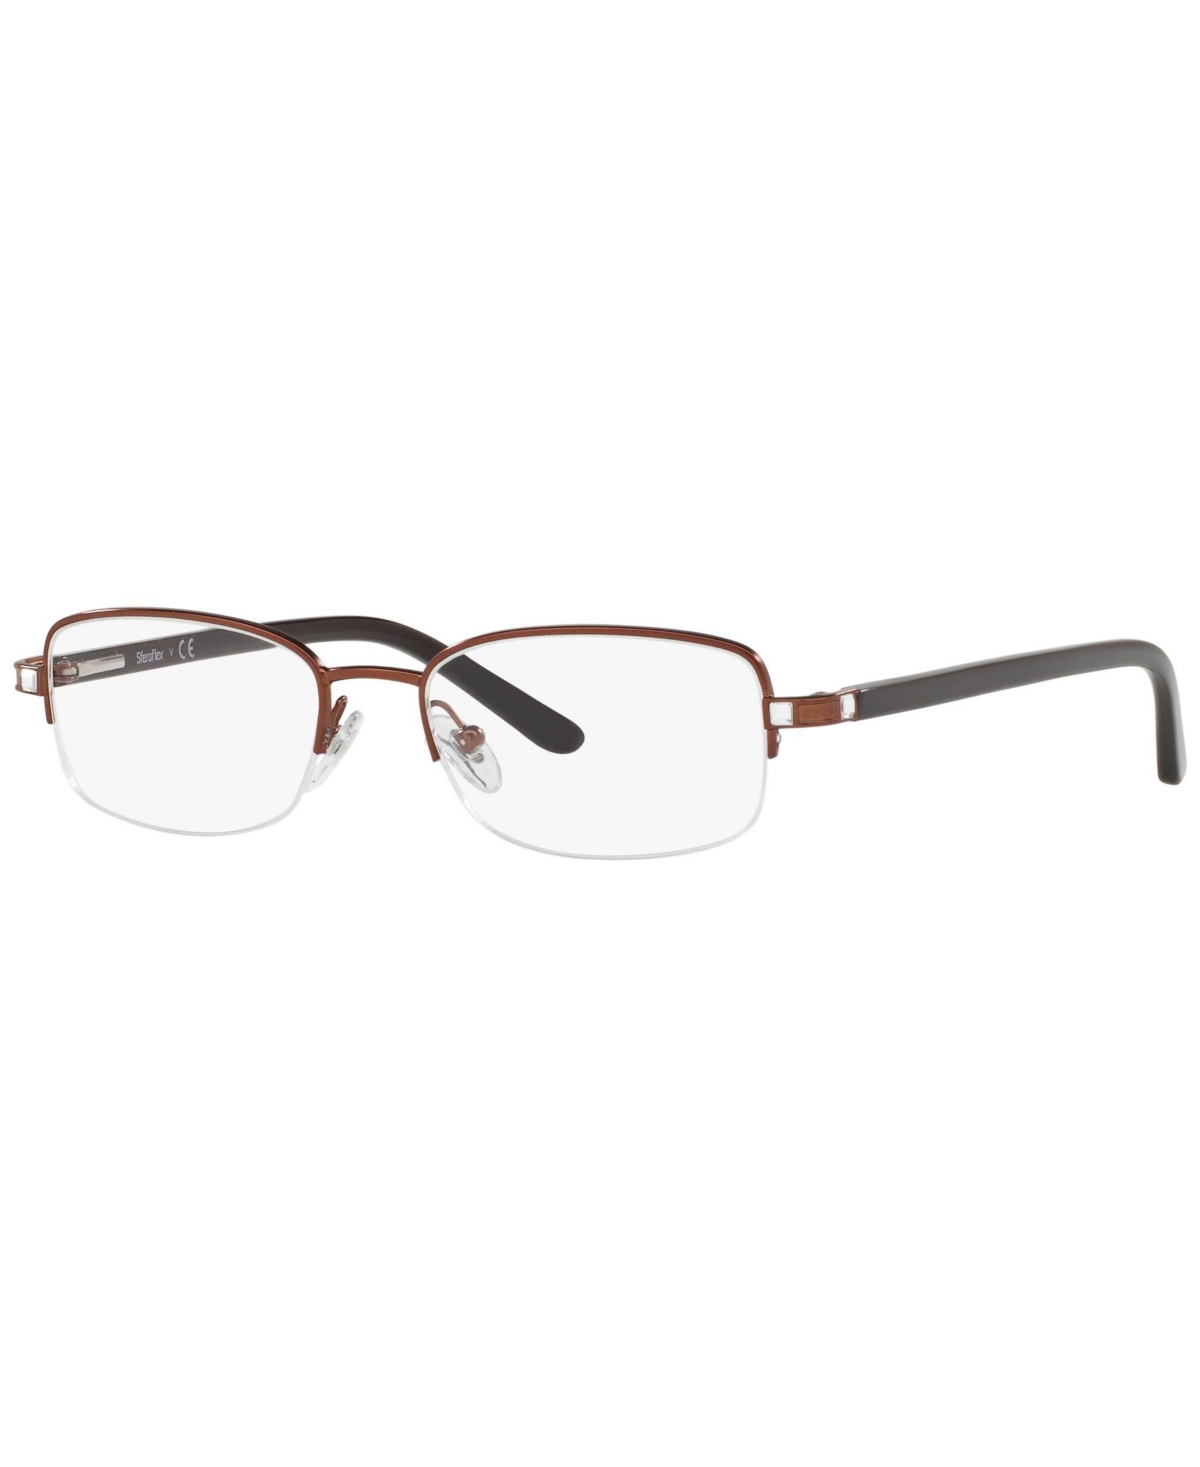 SF2585B Women's Rectangle Eyeglasses - Copper